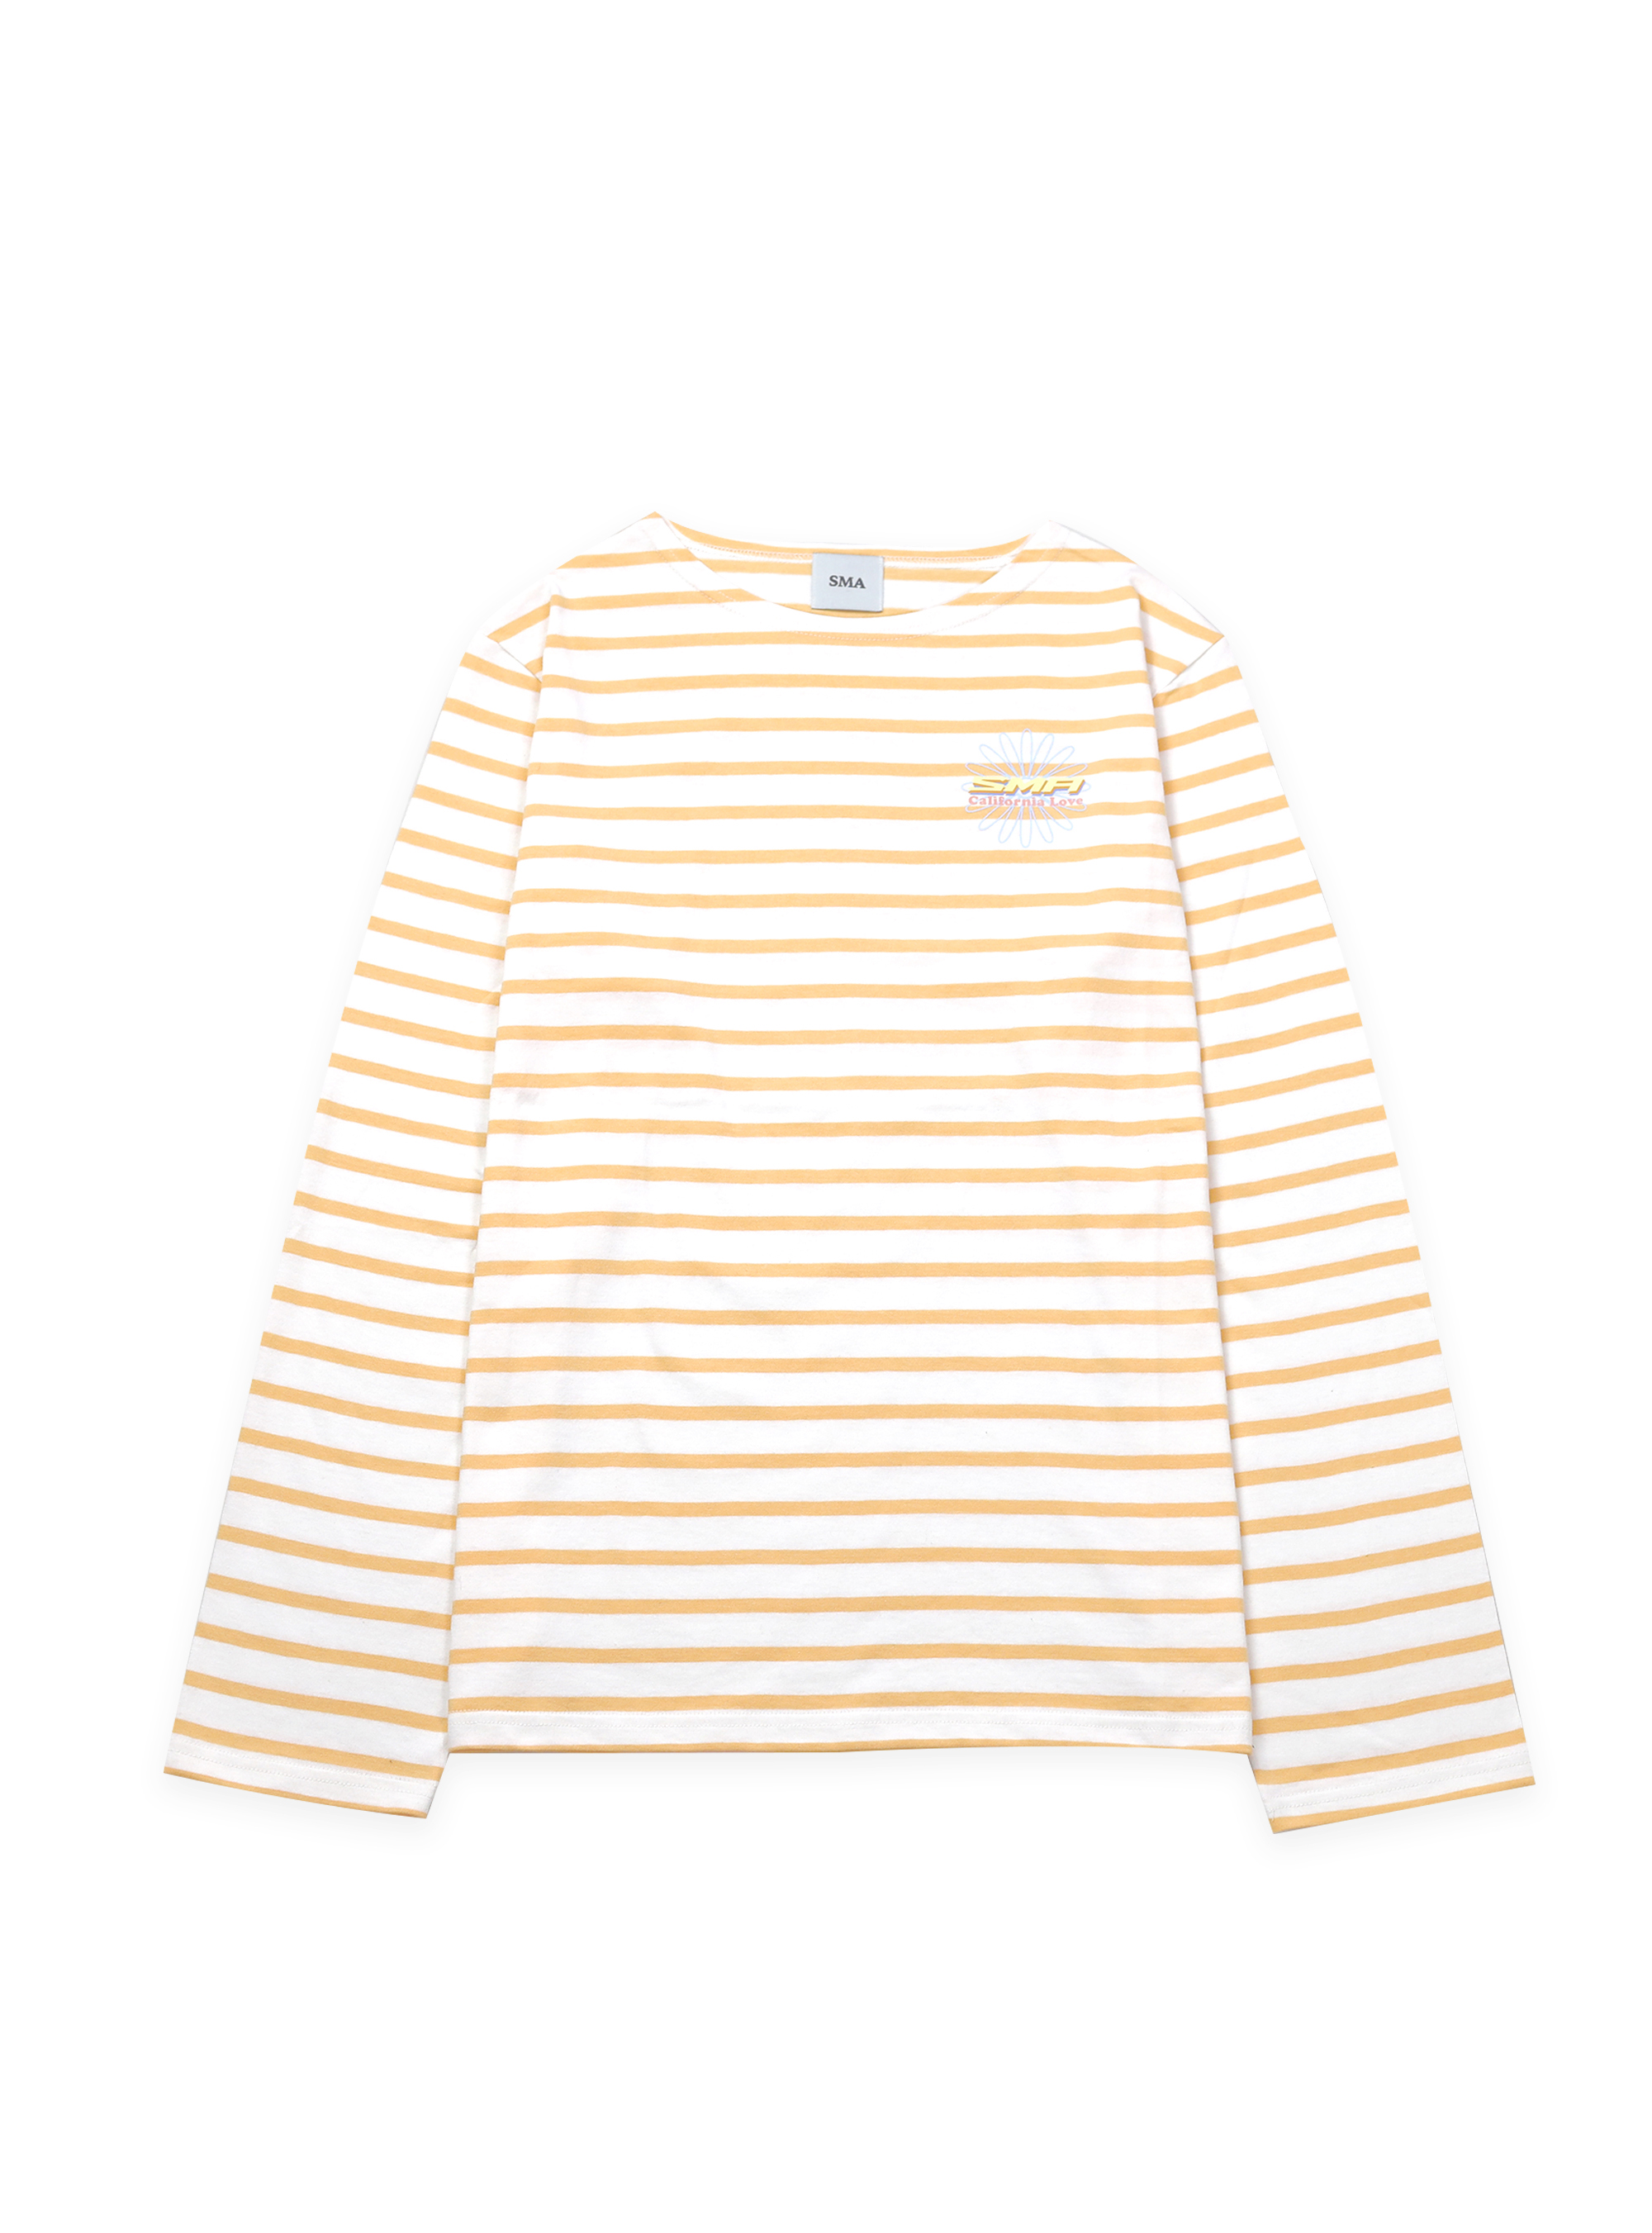 Daisy Long Sleeve Stripe_White Orange Unisex [30% SALE]